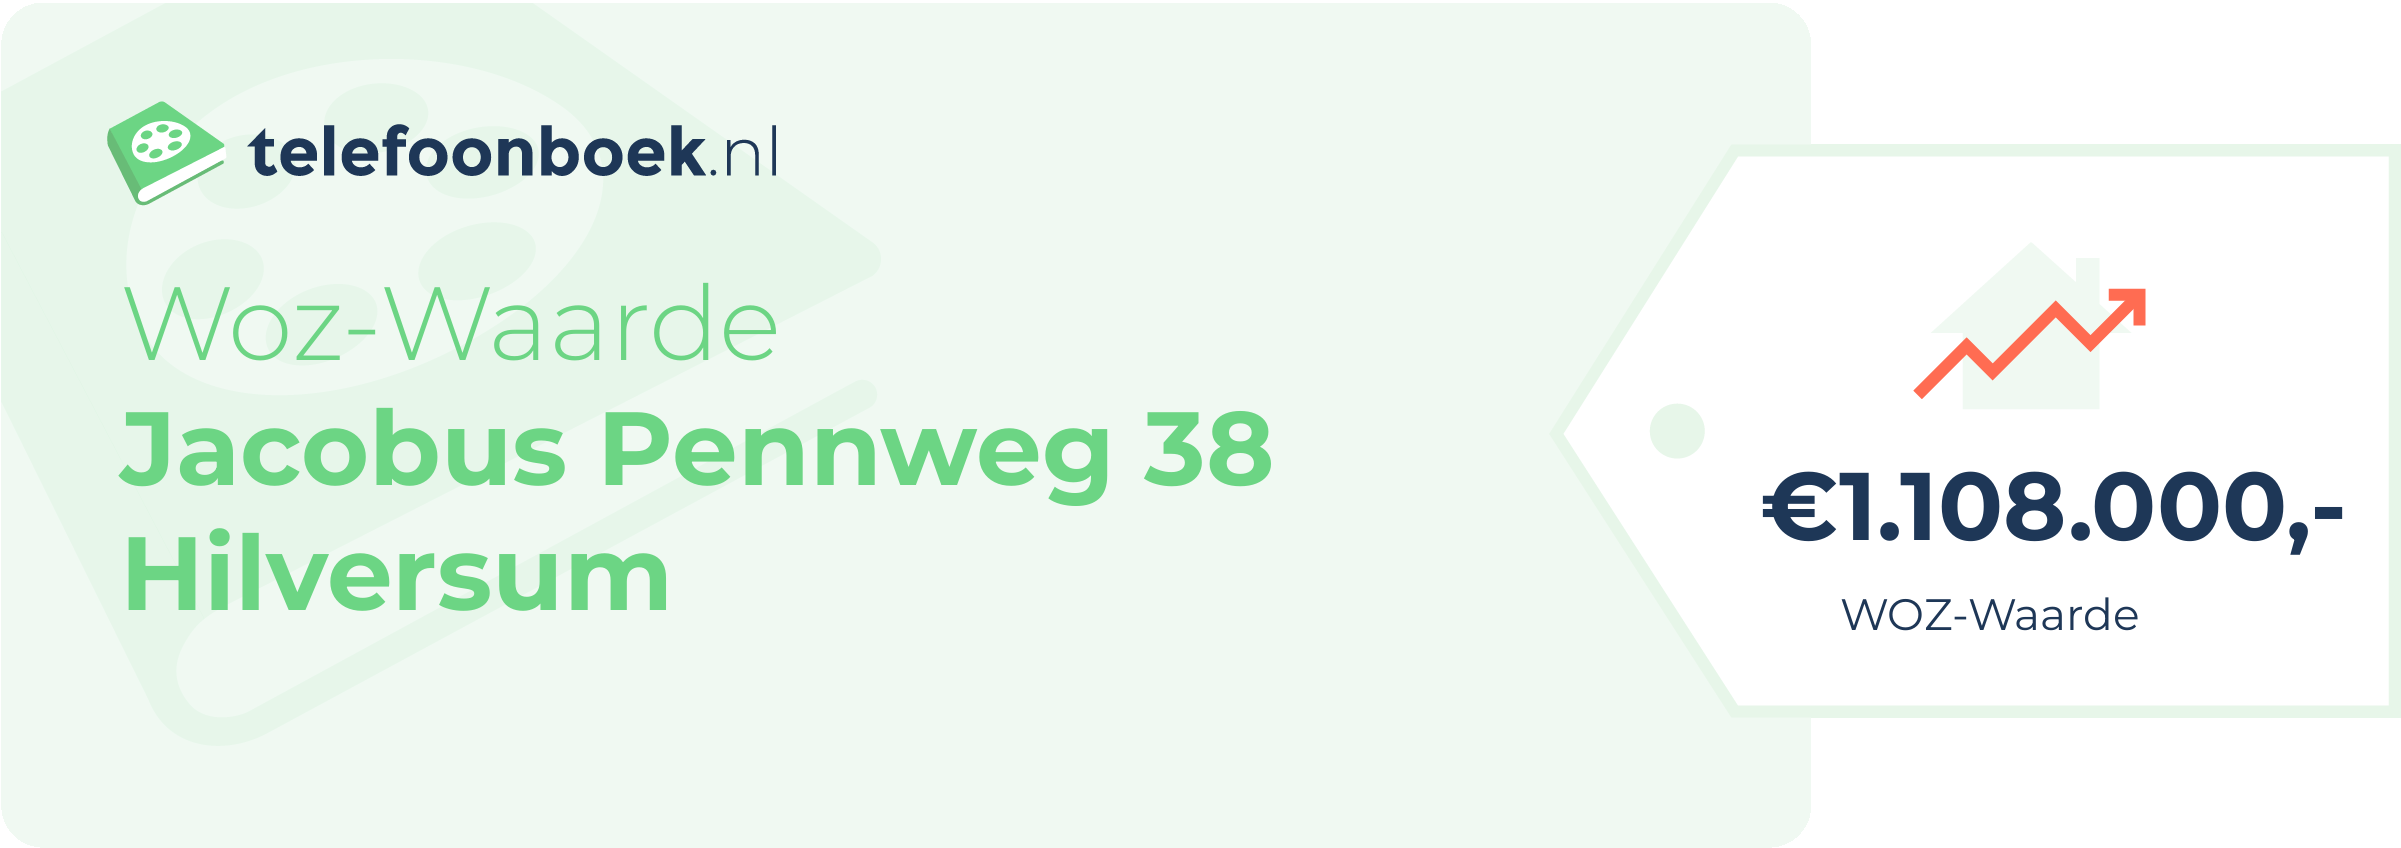 WOZ-waarde Jacobus Pennweg 38 Hilversum